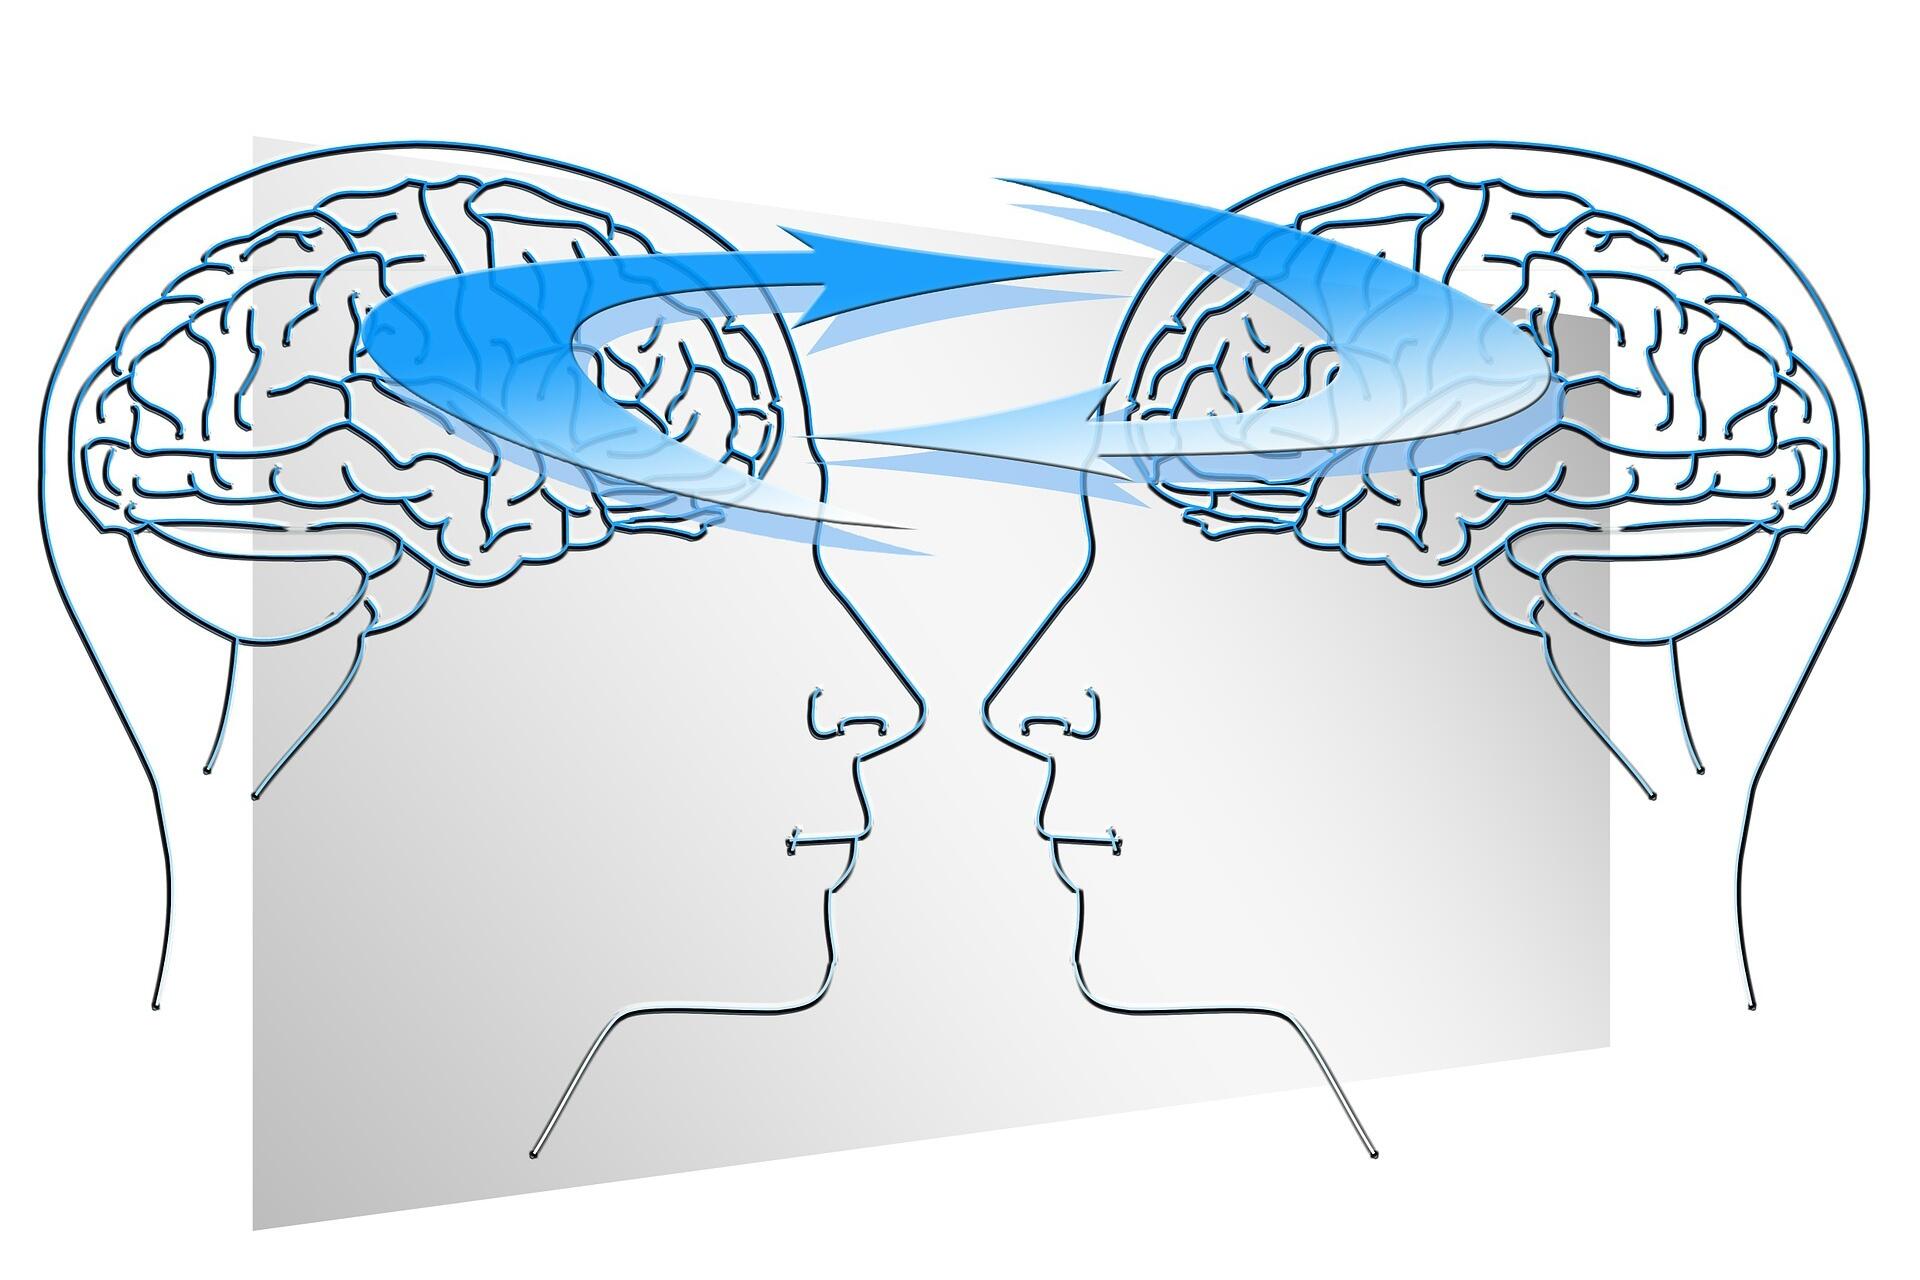 Grafische Darstellung von zwei Köpfen/Gehirnen, deren Ideen und Wissen gegenseitig ausgetauscht wird.